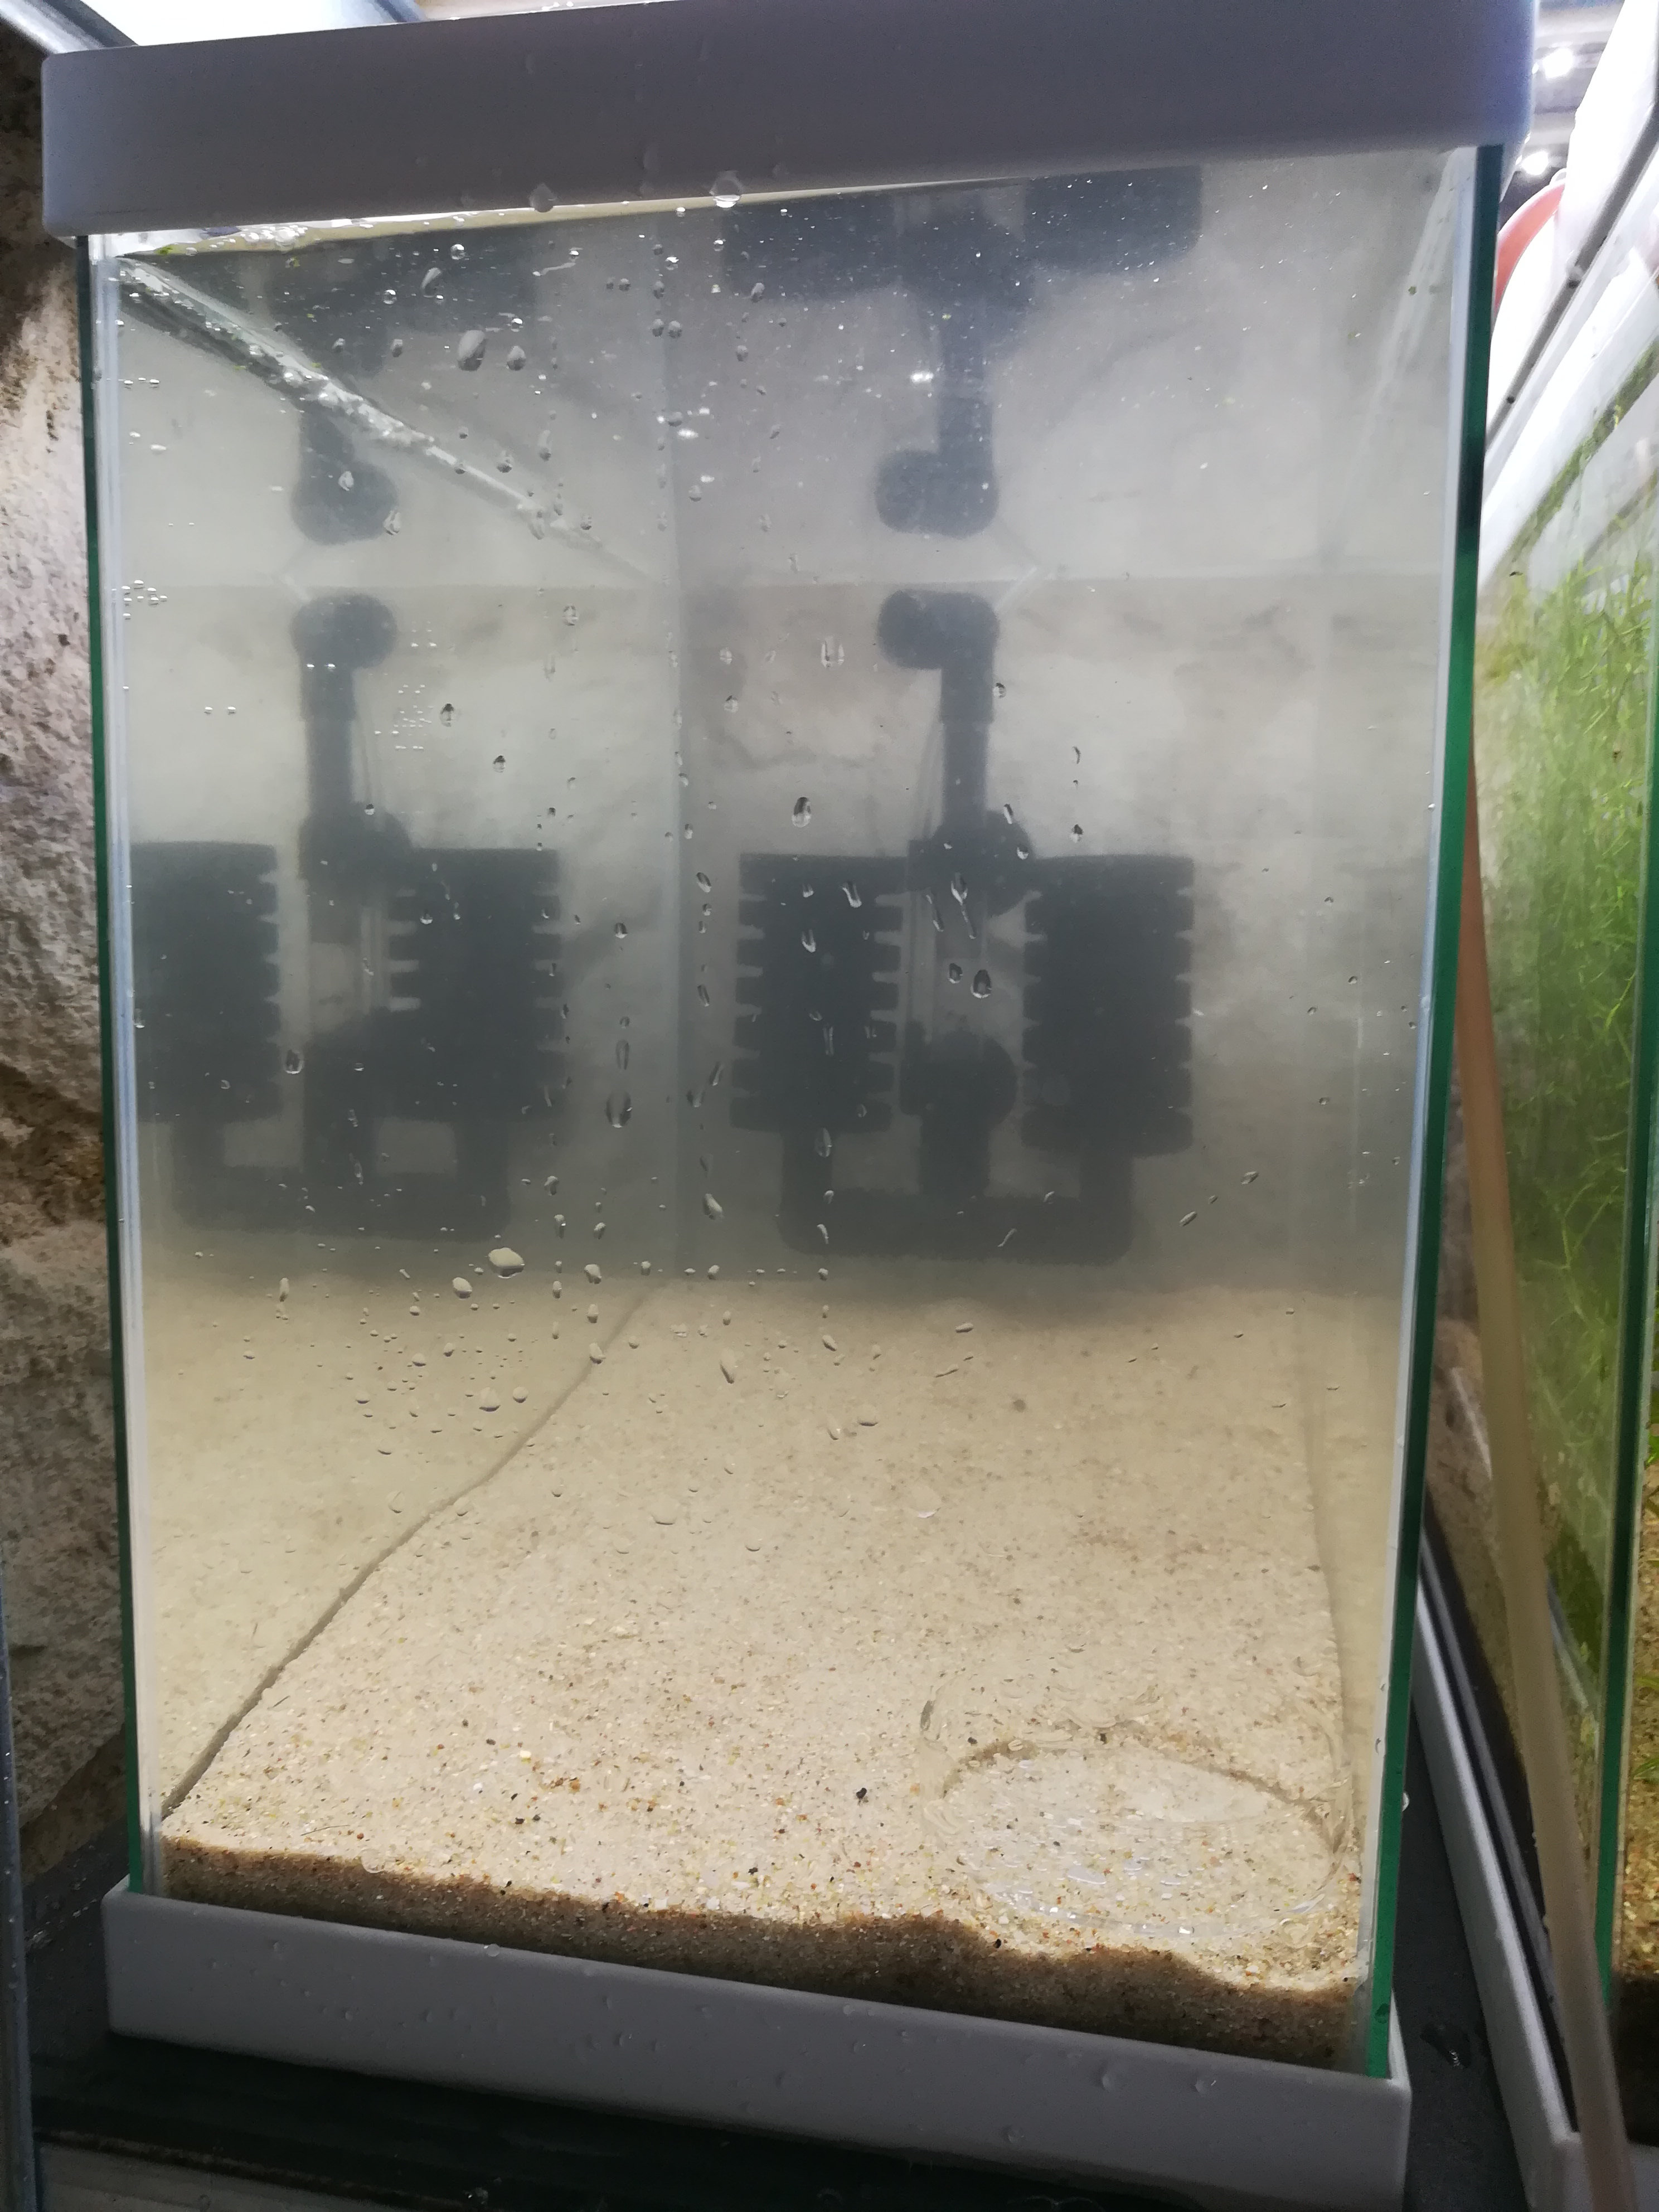 [Tuto] Mettre en eau un bac pour crevettes (Neocaridina), le guide illustré W51m